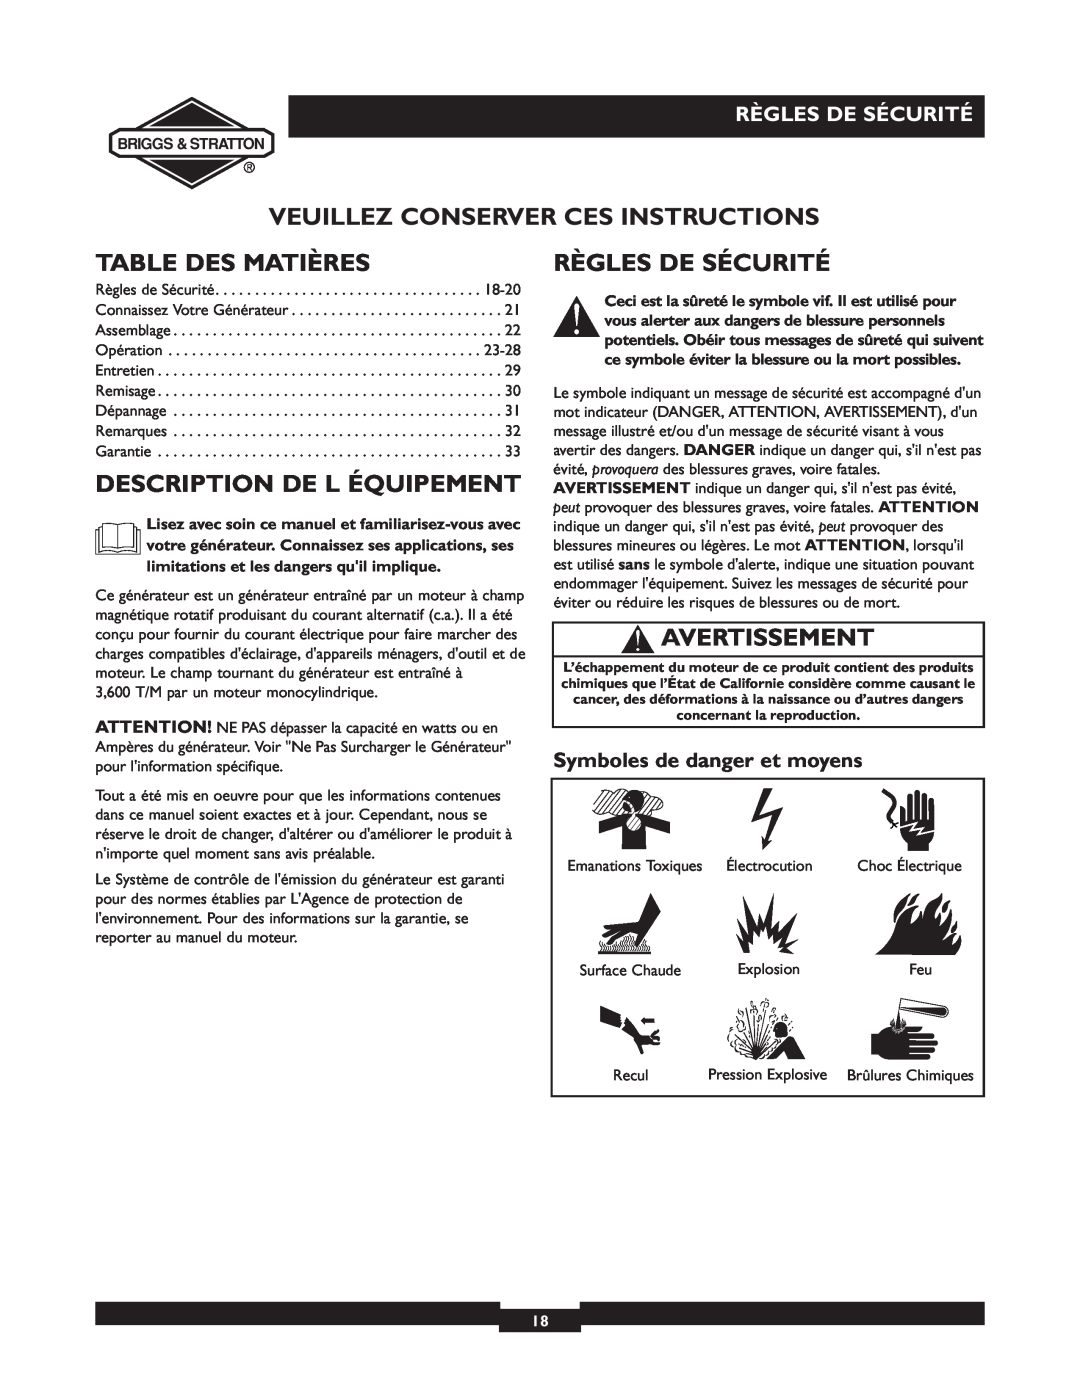 Briggs & Stratton 01532-4 owner manual Veuillez Conserver Ces Instructions, Table Des Matières, Description De L Équipement 